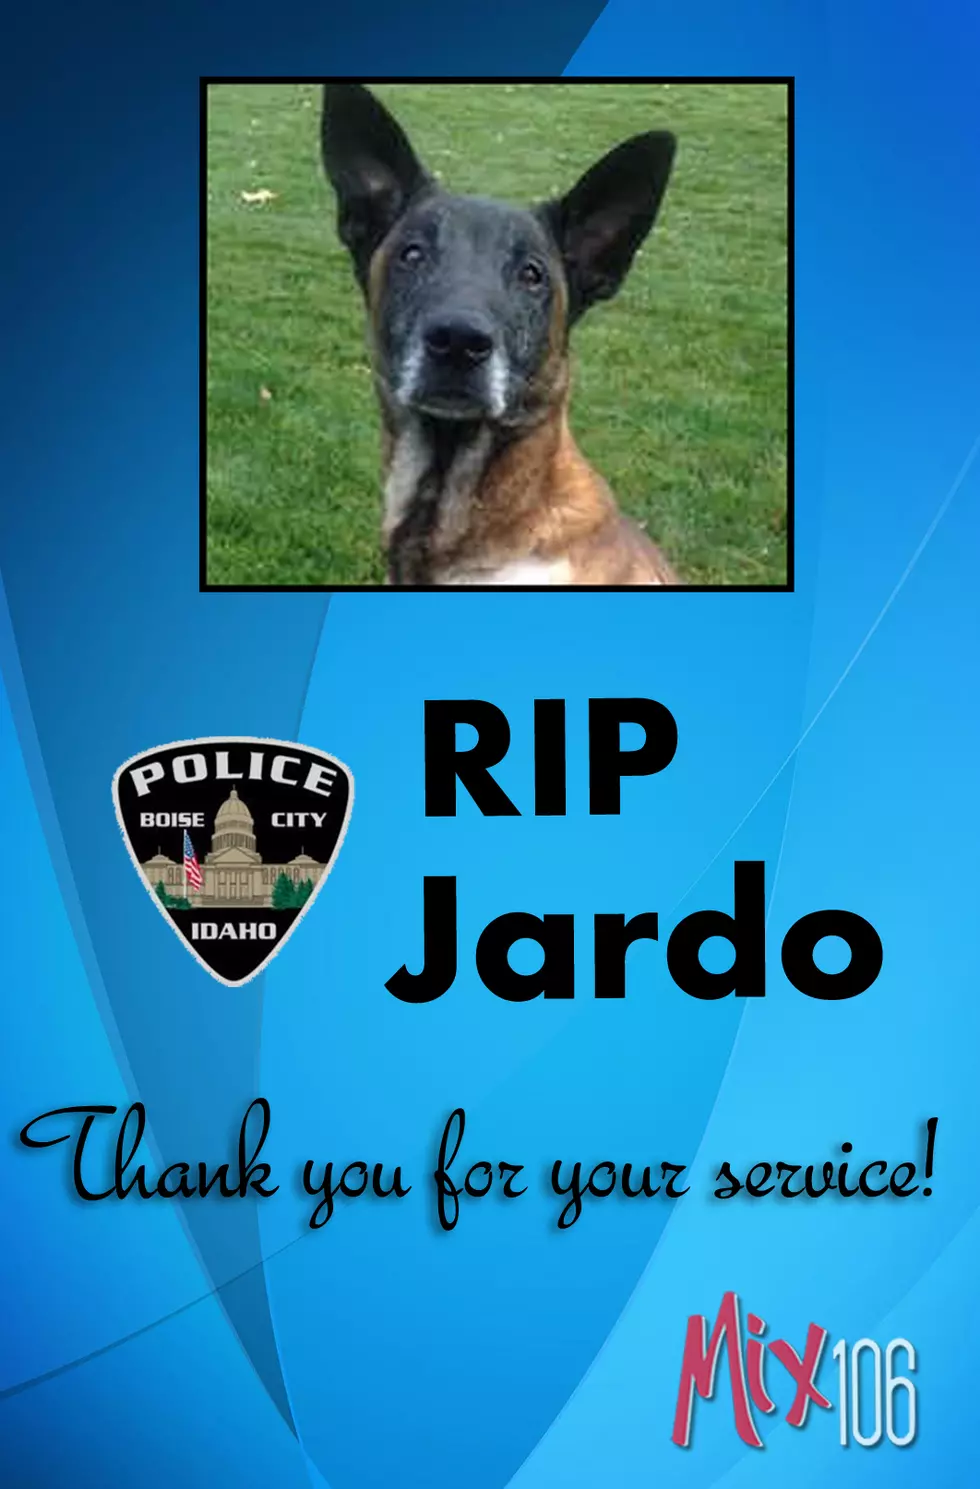 Memorial Service for Boise Police K9, Jardo